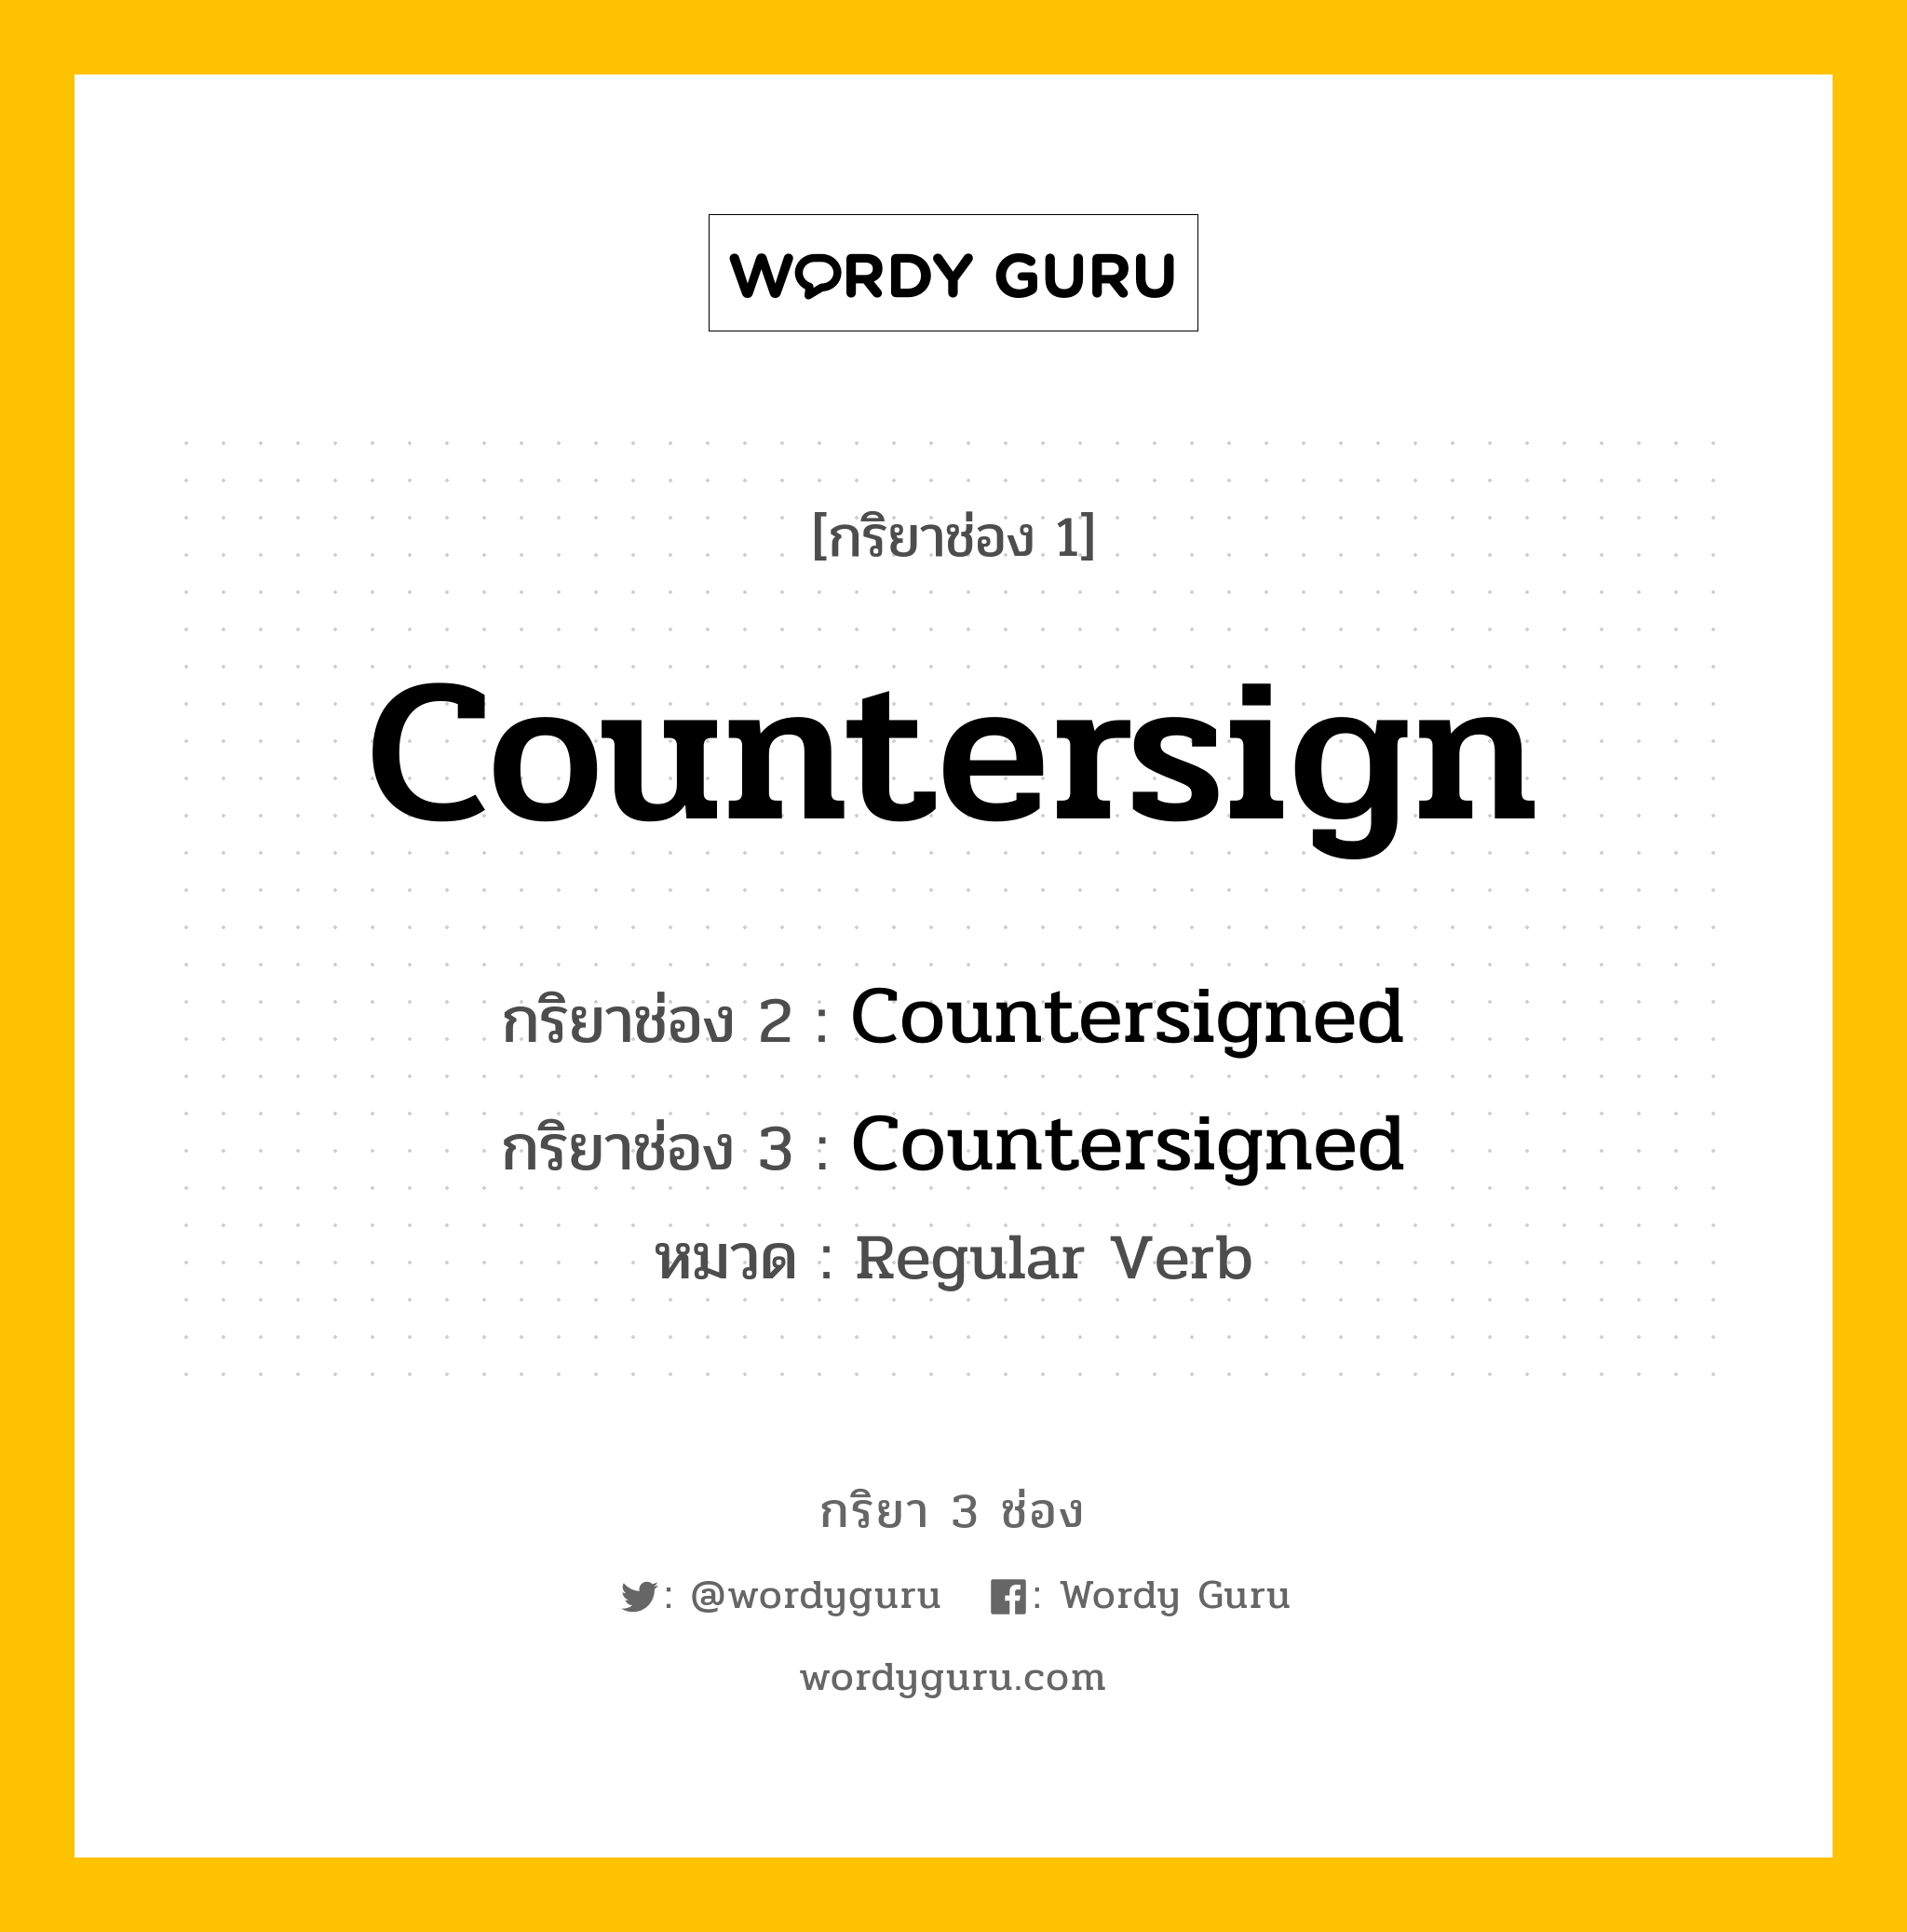 กริยา 3 ช่อง: Countersign ช่อง 2 Countersign ช่อง 3 คืออะไร, กริยาช่อง 1 Countersign กริยาช่อง 2 Countersigned กริยาช่อง 3 Countersigned หมวด Regular Verb หมวด Regular Verb